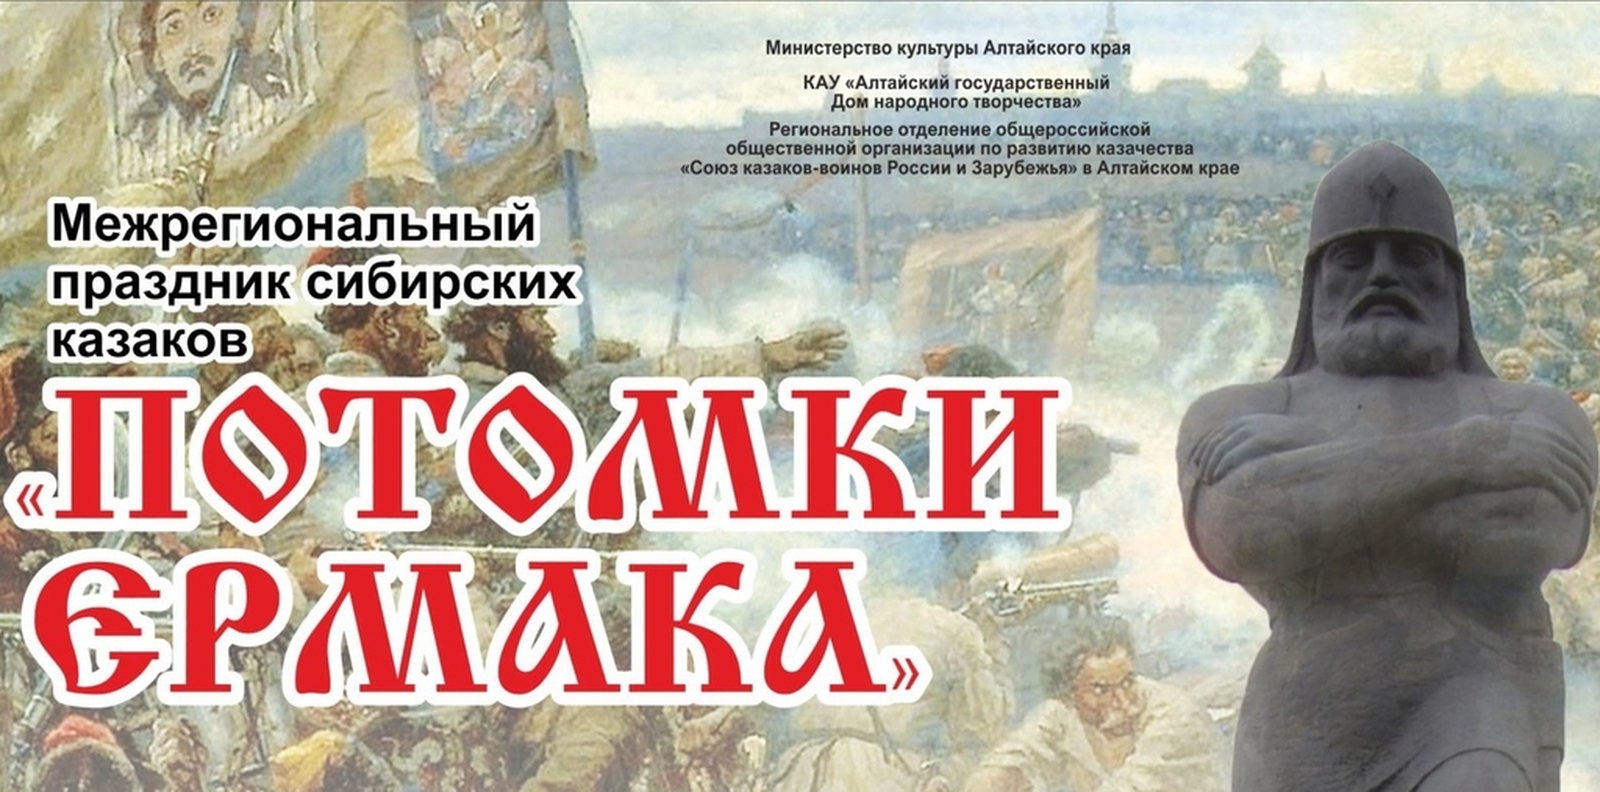 Начался приём заявок для участия в Межрегиональном празднике сибирских казаков «Потомки Ермака»